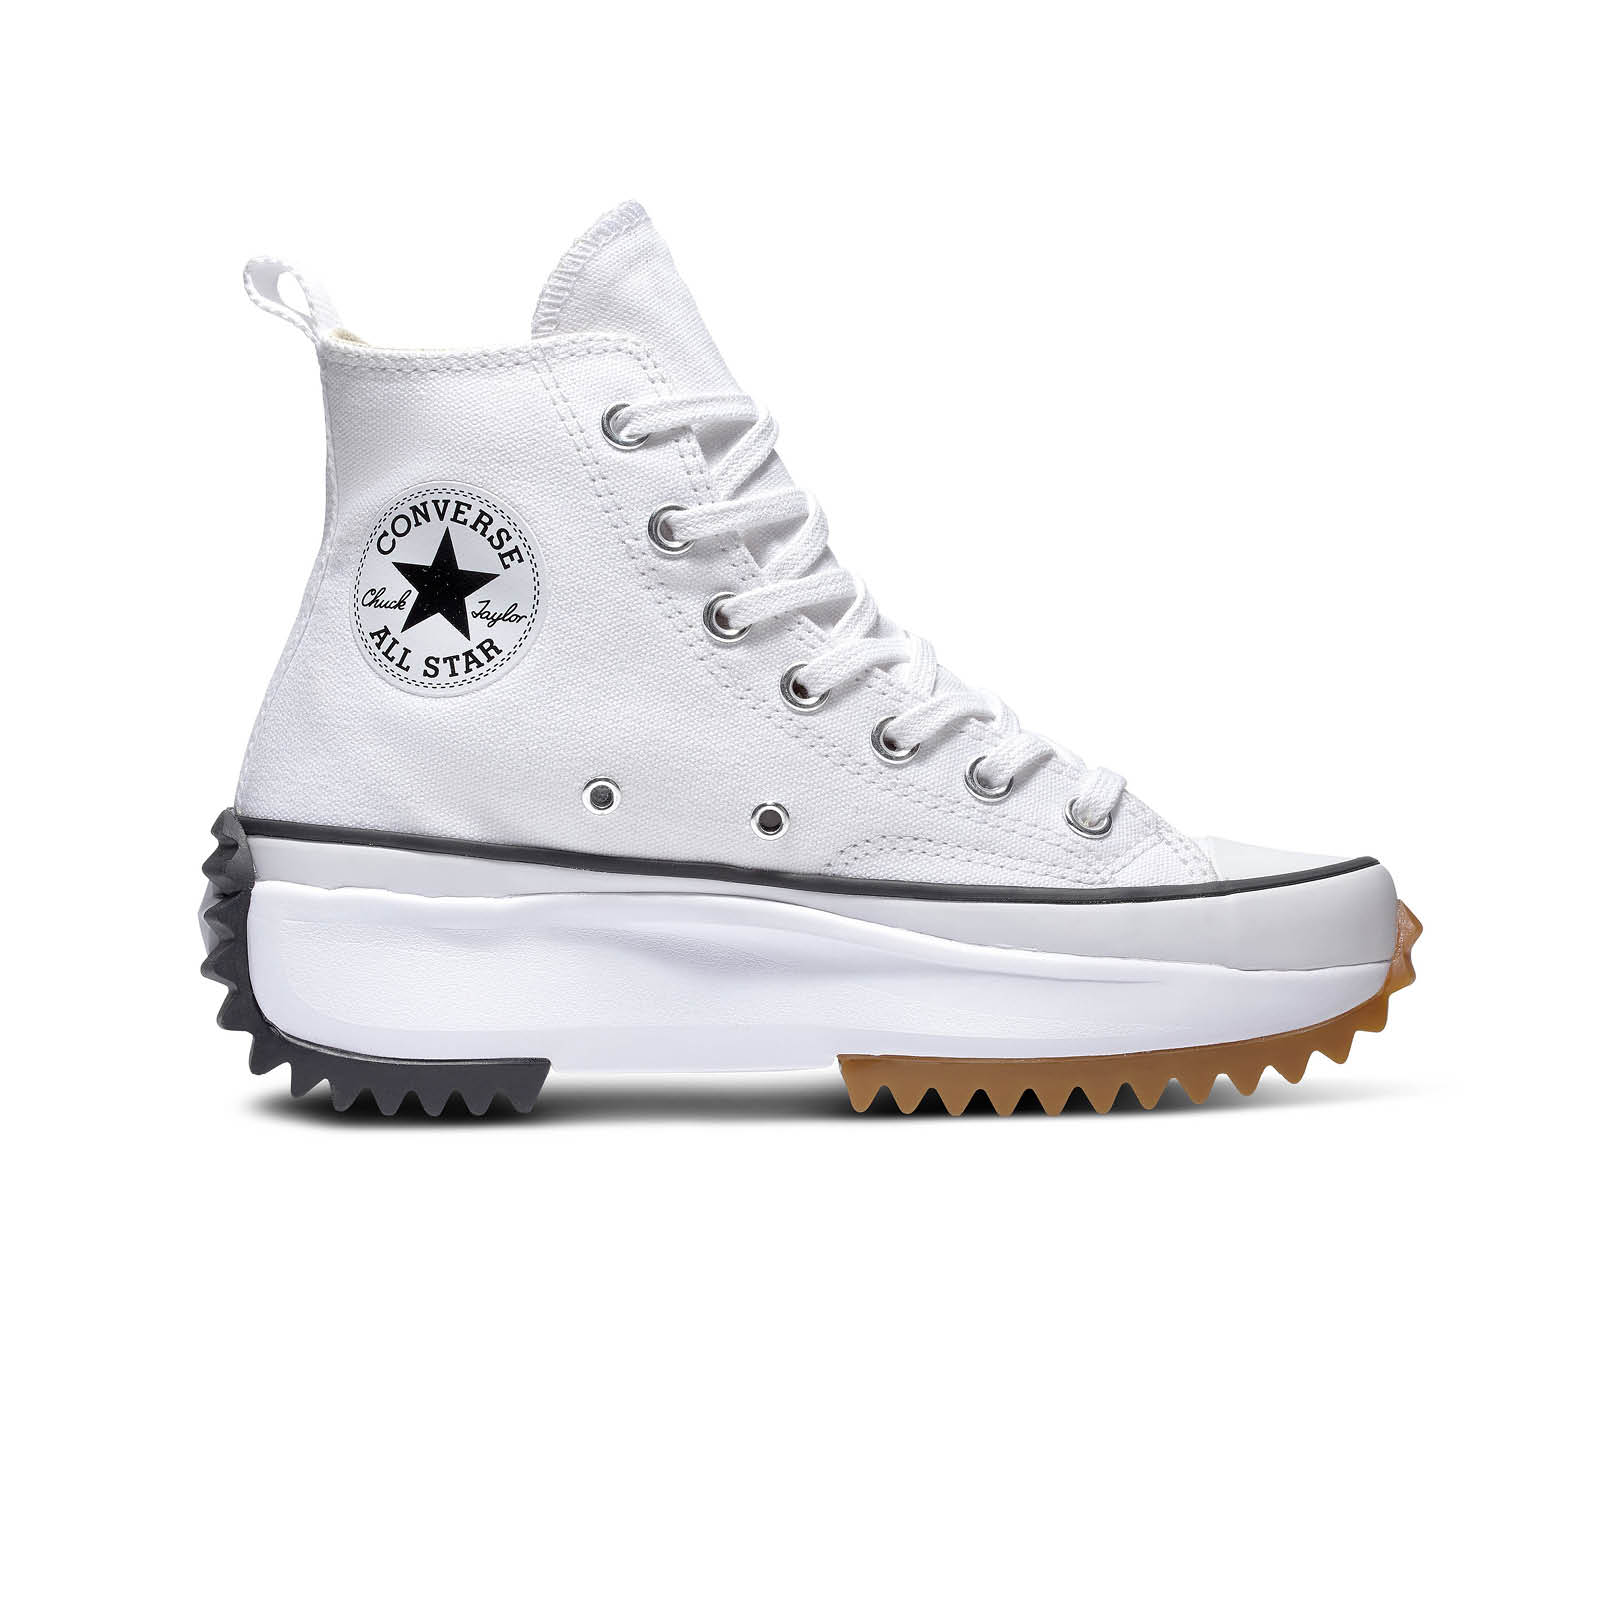 Γυναικεία > Παπούτσια > Sneaker > Μποτάκι High Cut Converse - RUN STAR HIKE - 102-WHITE/BLACK/GUM